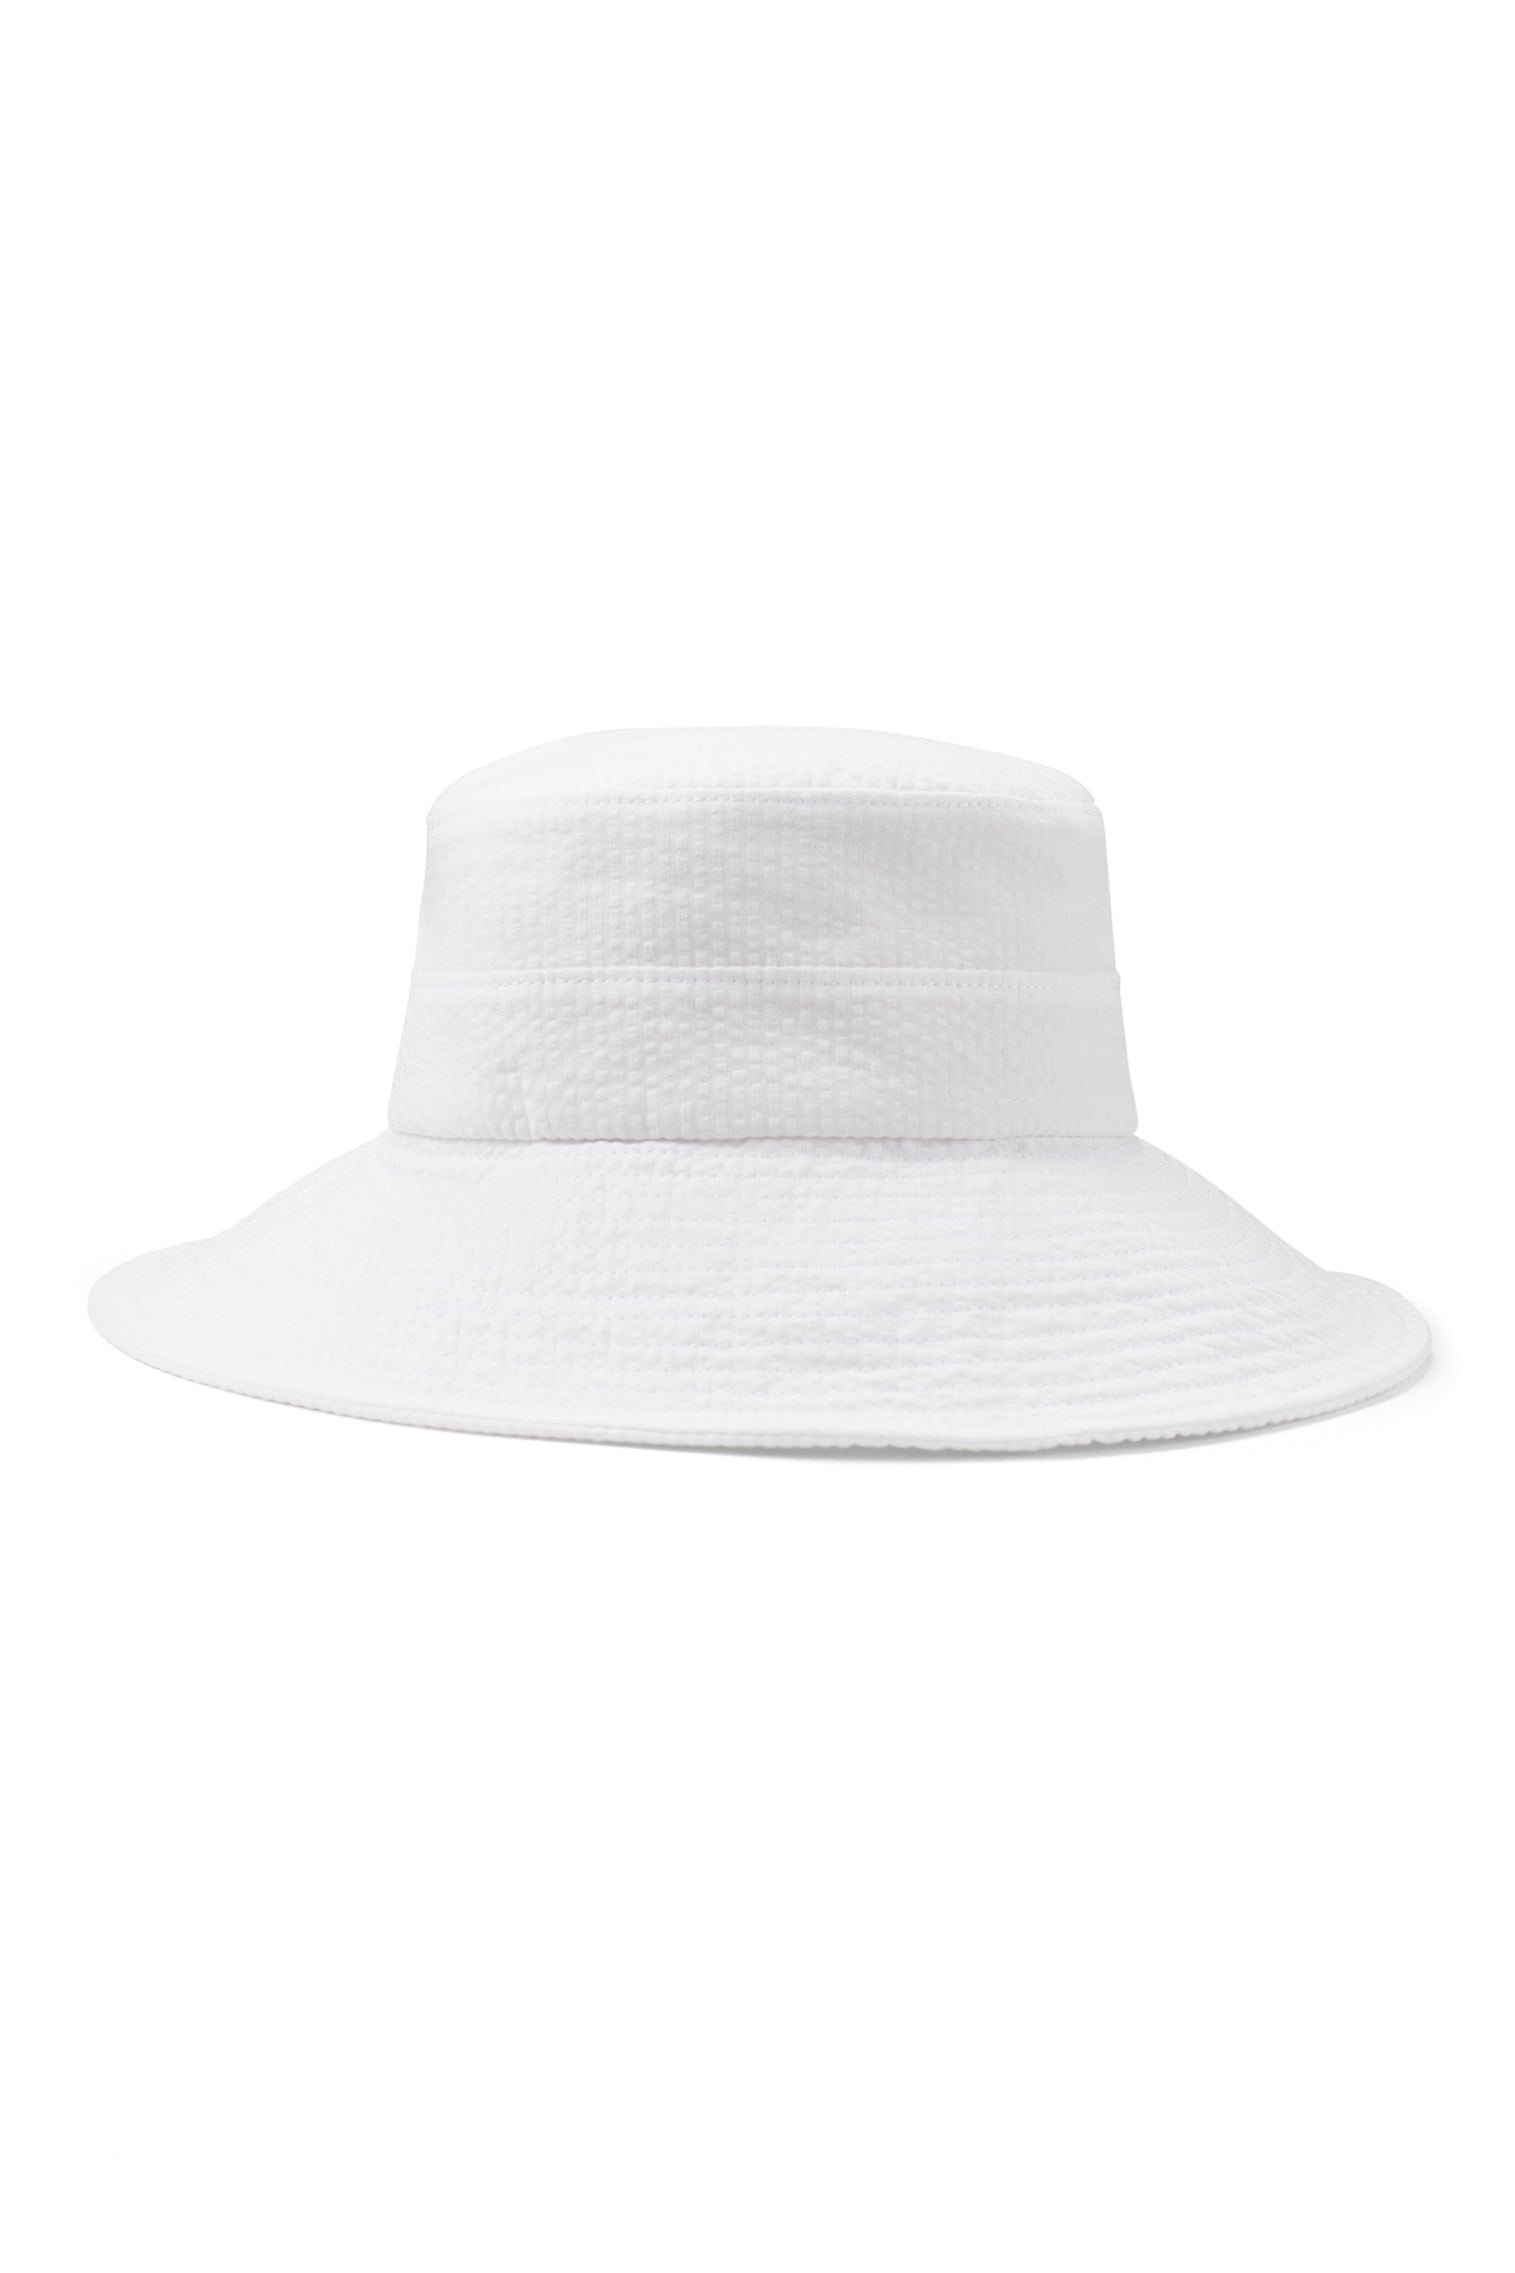 Margot Seersucker Sun Hat - Women’s Hats - Lock & Co. Hatters London UK